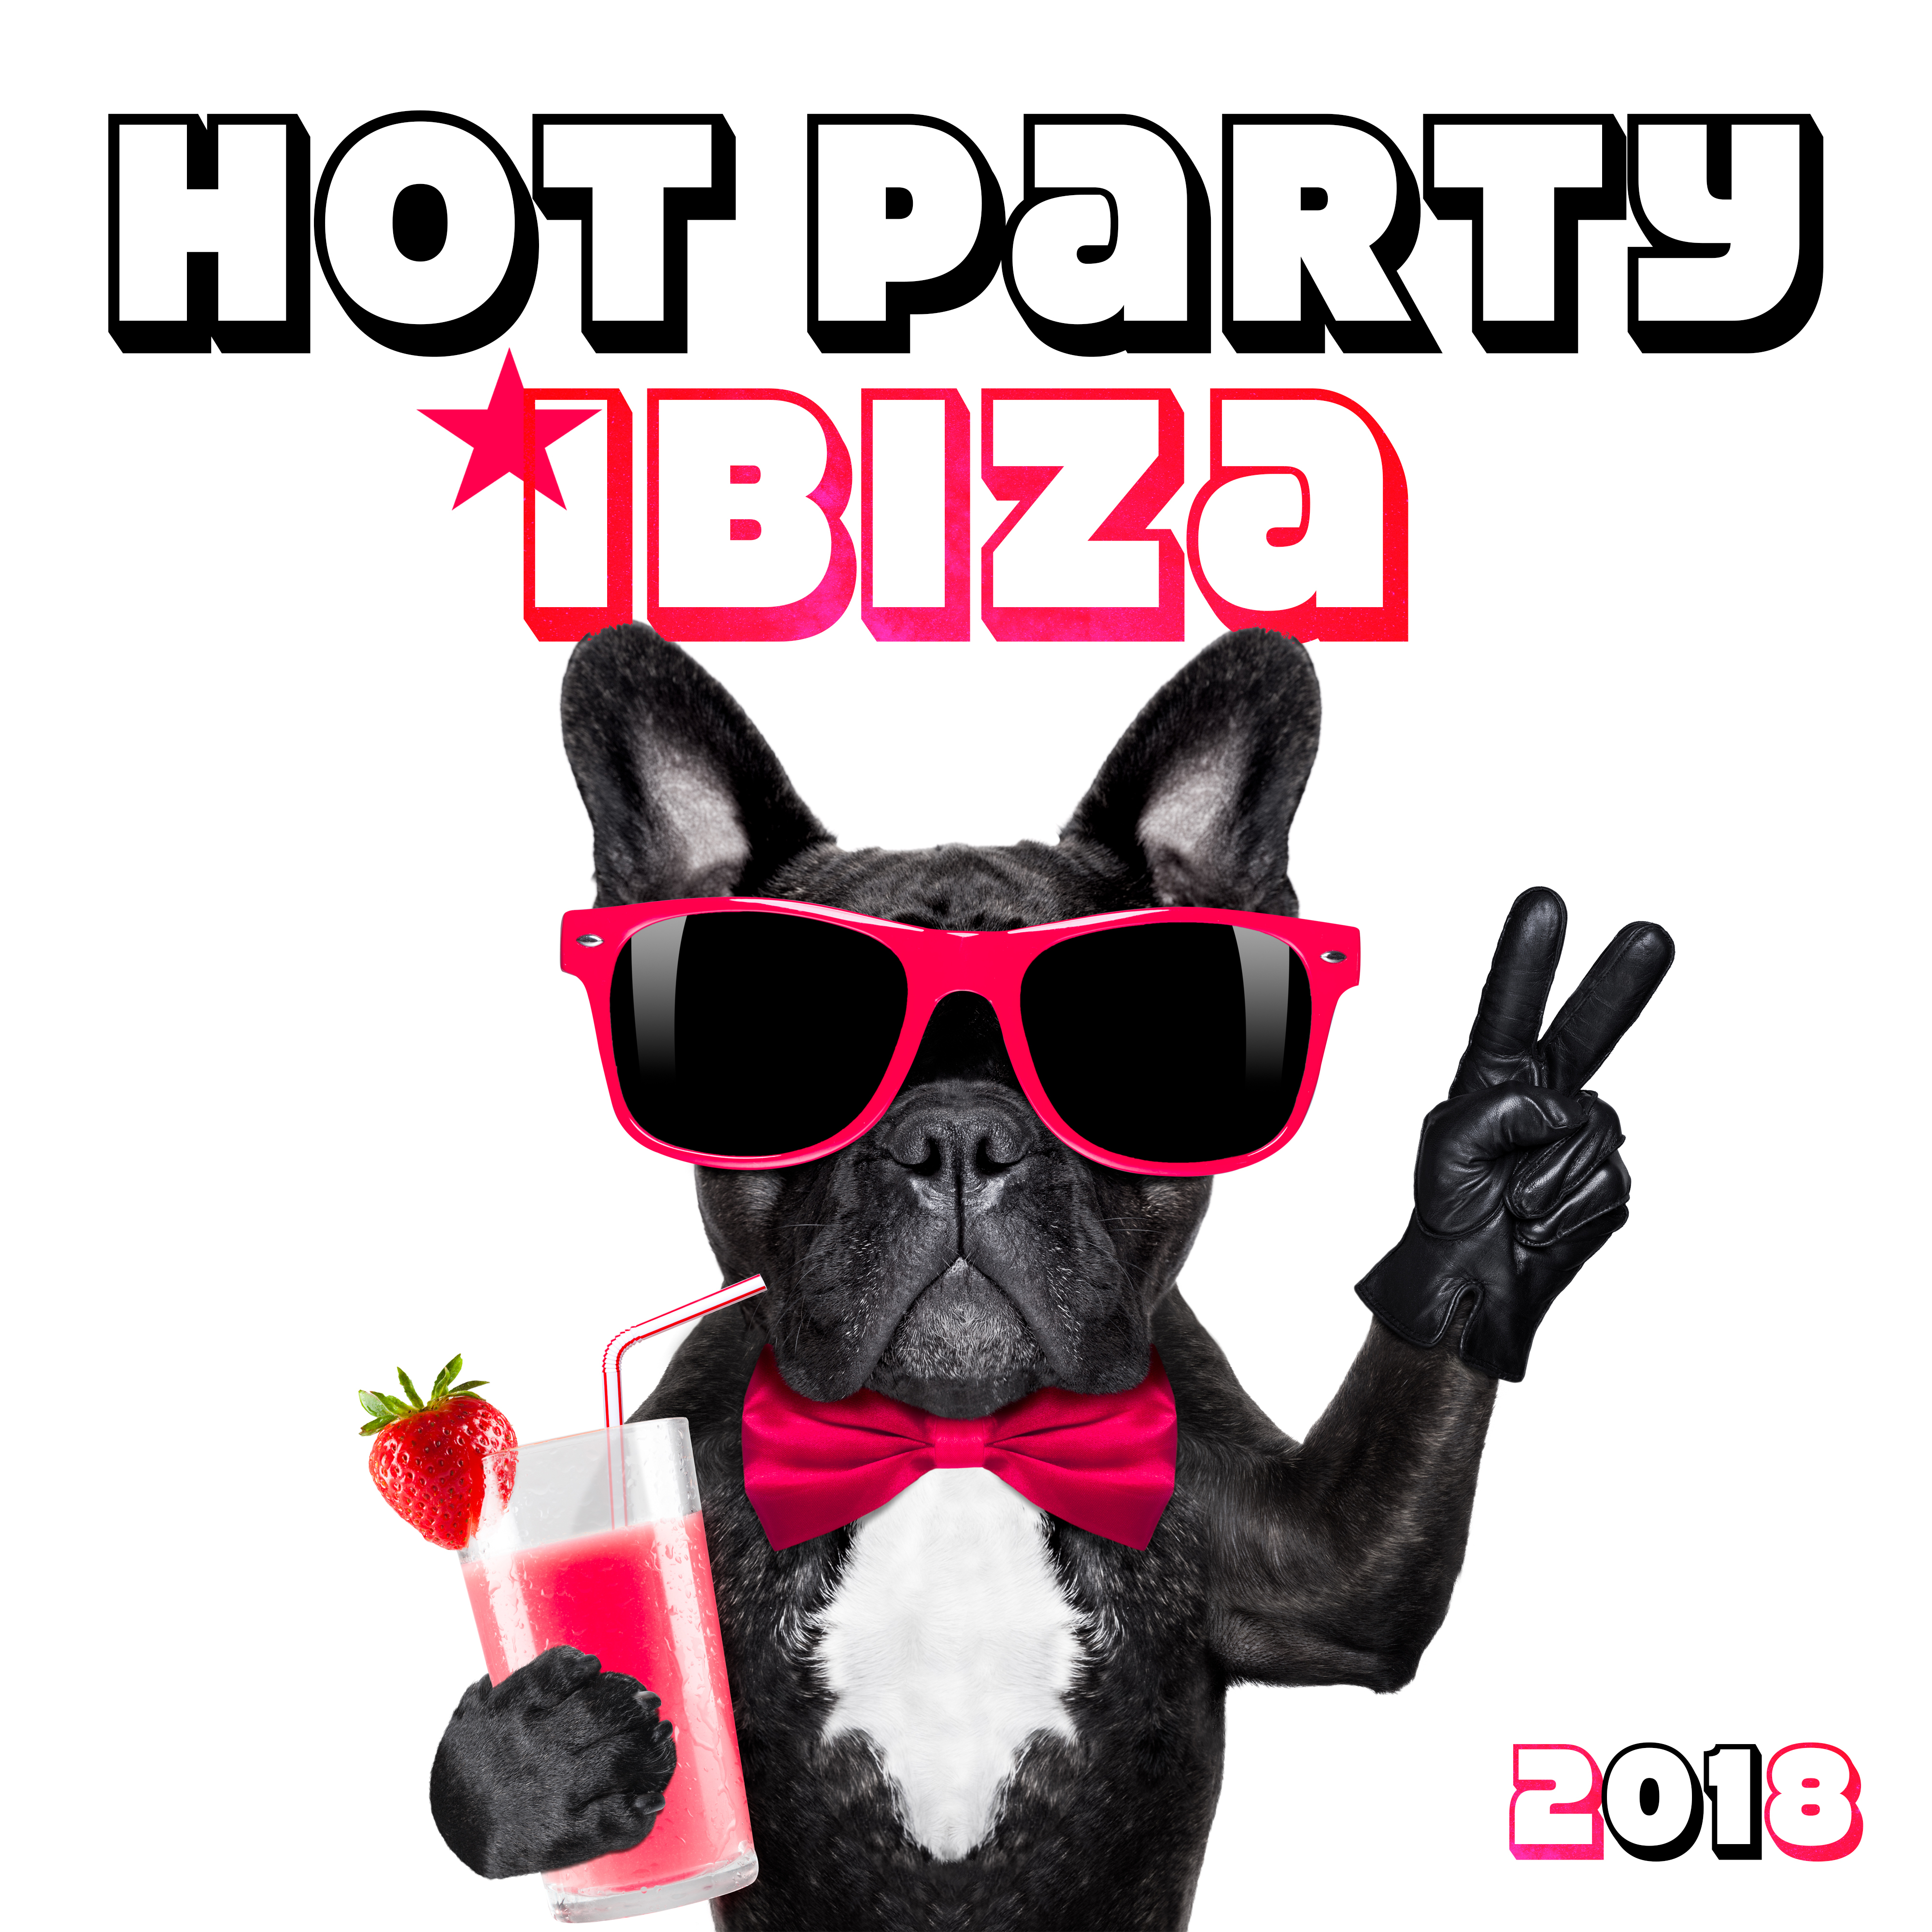 2018 Hot Party Ibiza